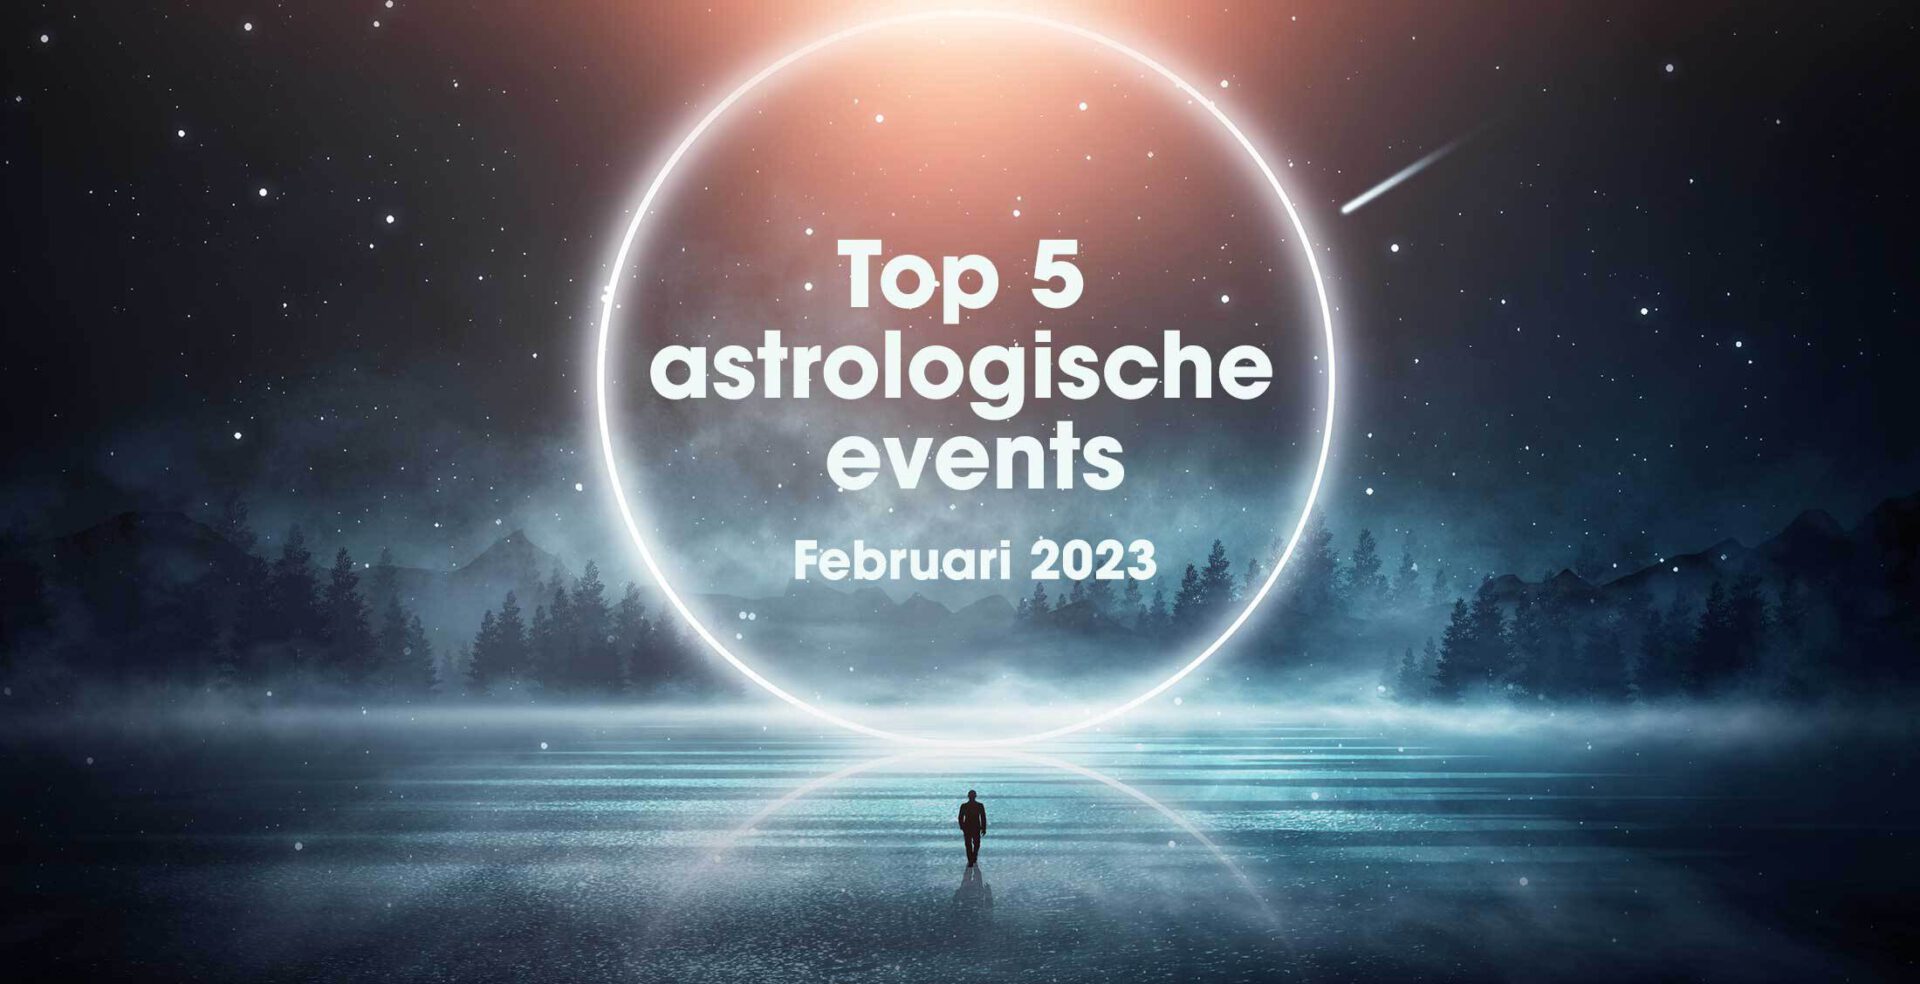 De top 5 astrologische gebeurtenissen in februari 2023